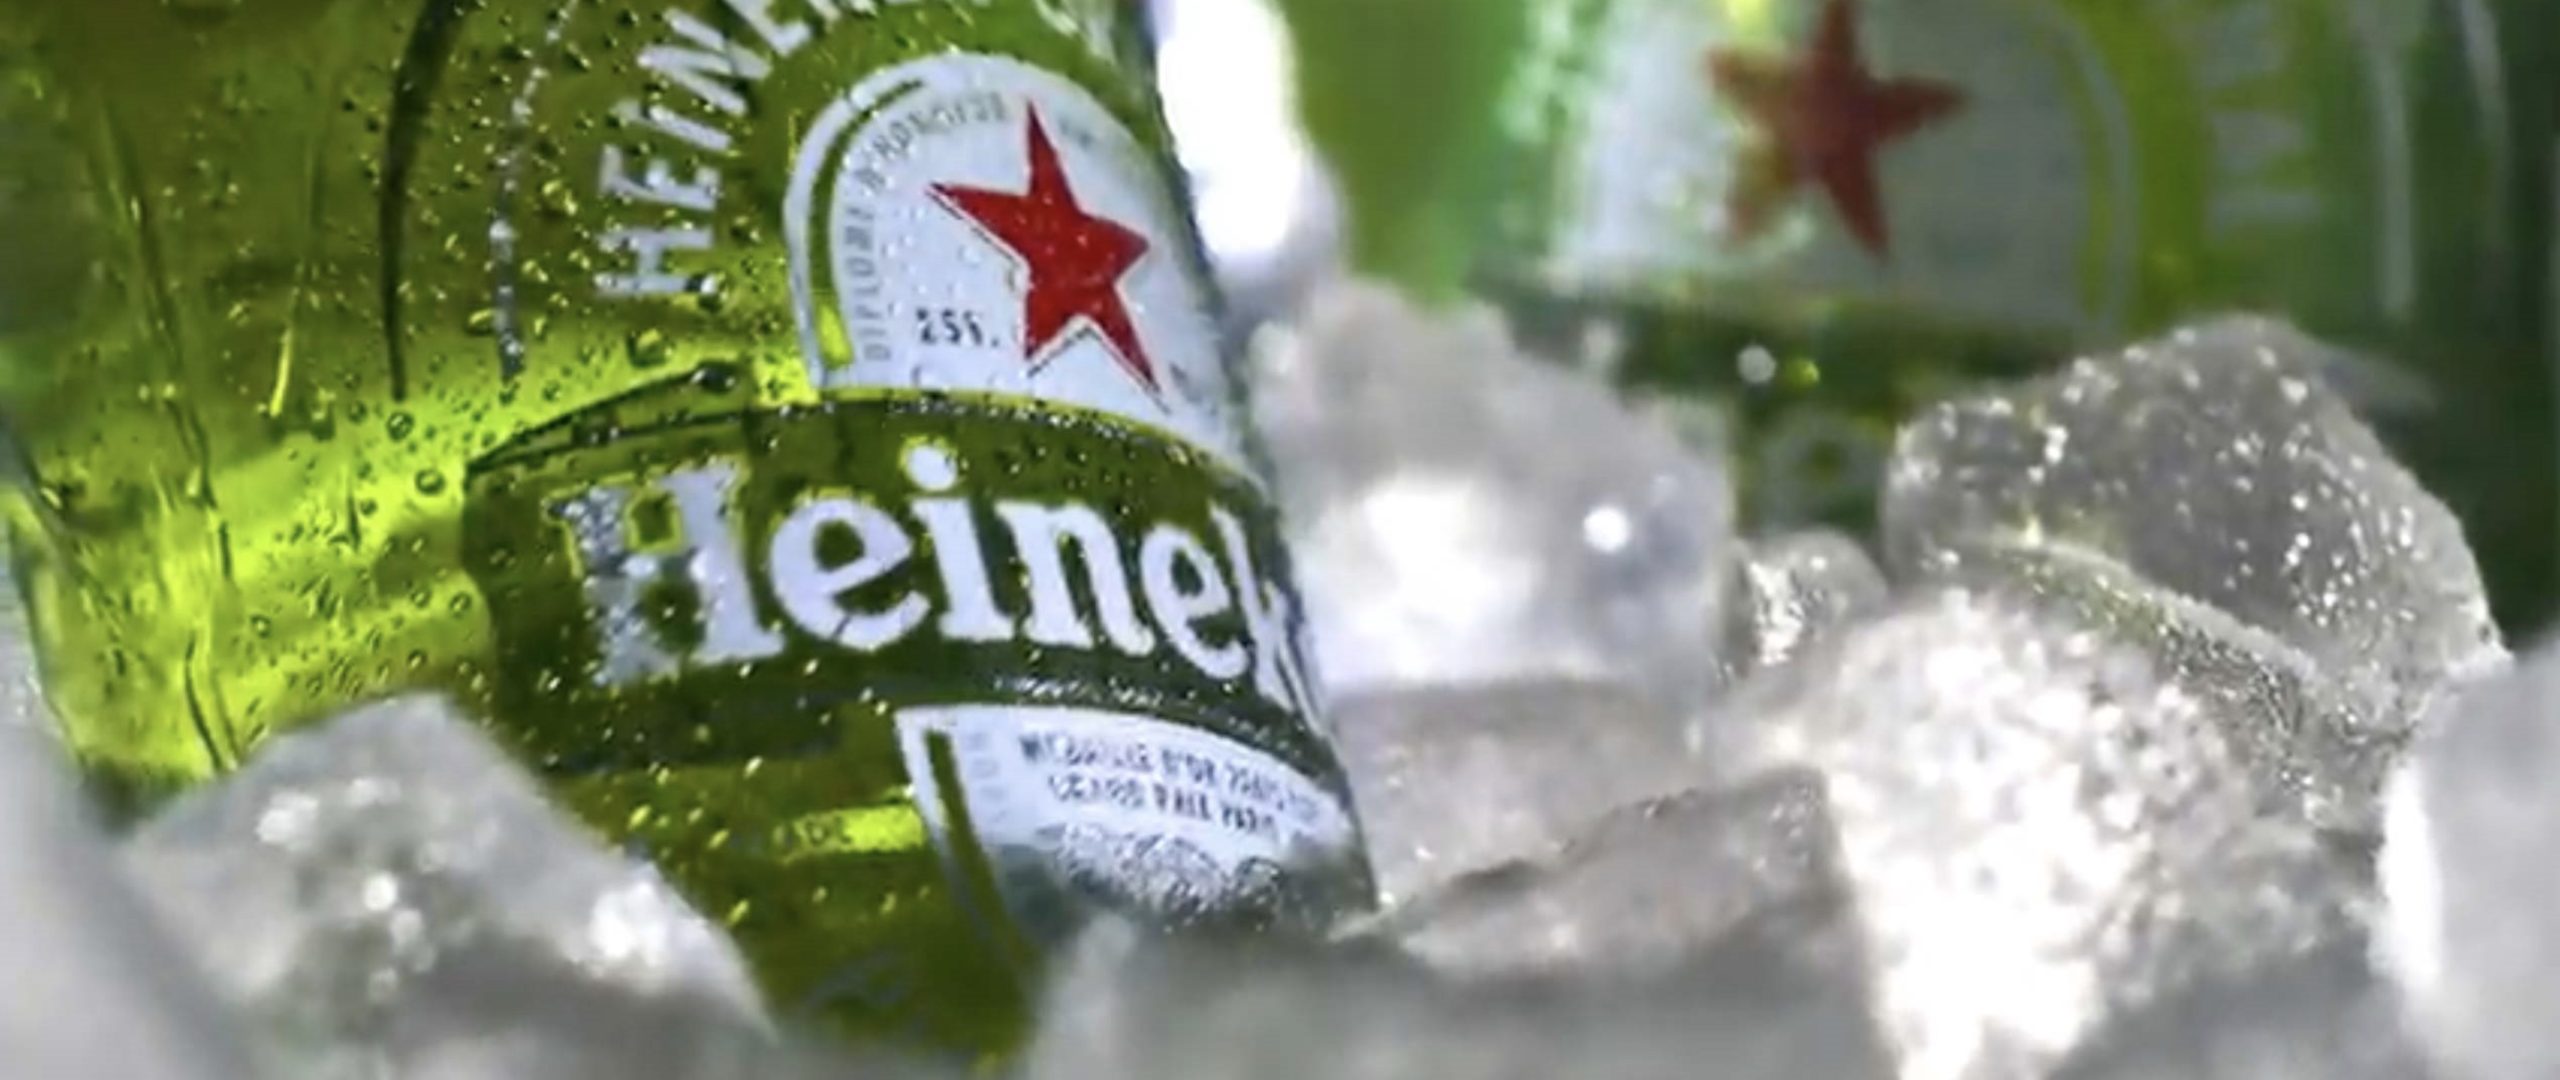 В третьем квартале продажи Heineken снизились на 4,2%